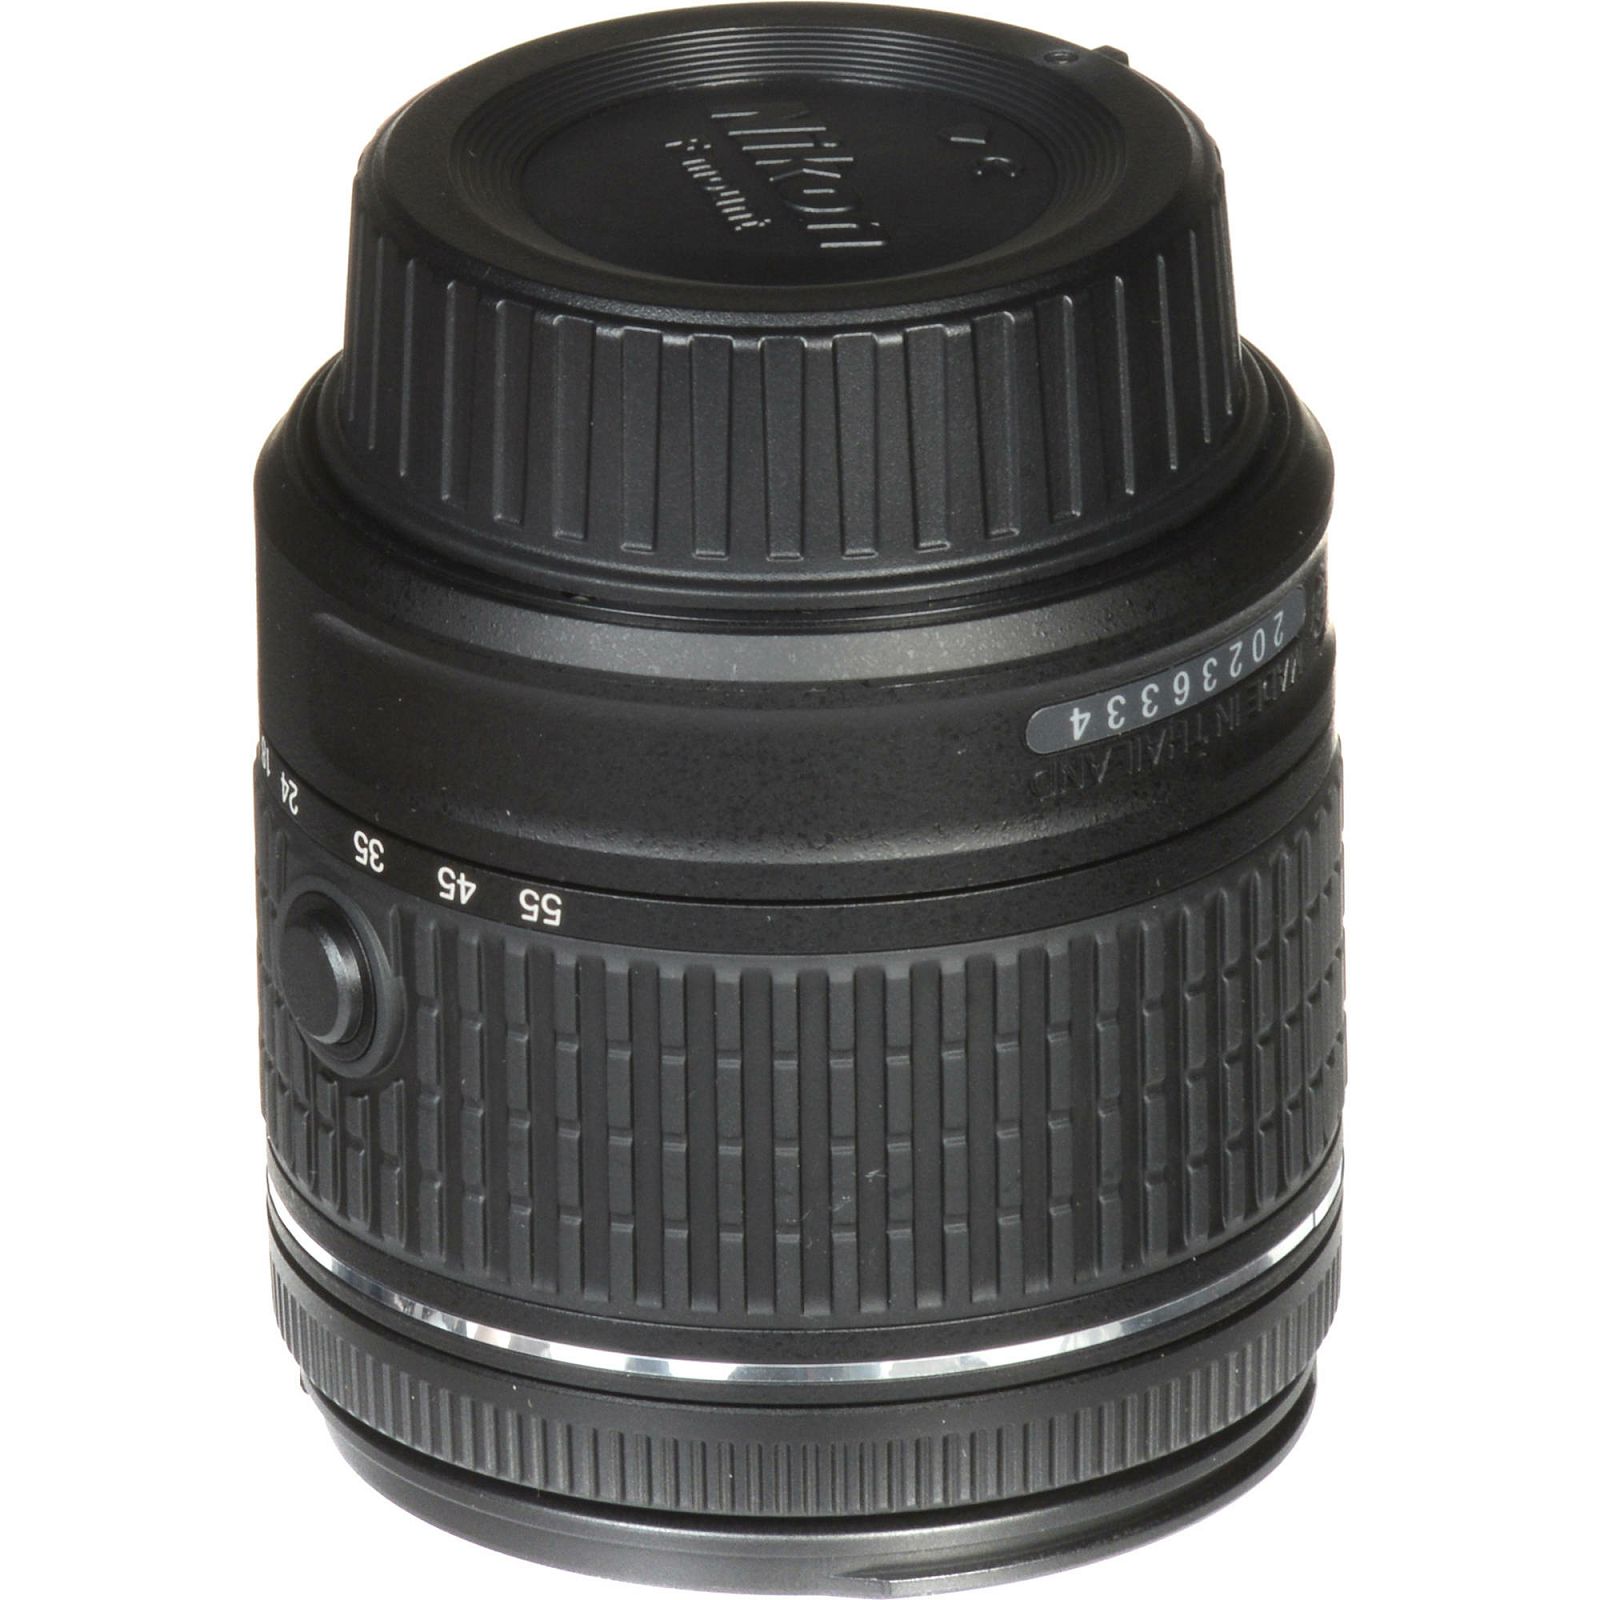 Nikon D3500 + AF-P 18-55 f/3.5-5.6 VR DX KIT DSLR digitalni fotoaparat i objektiv Nikkor 18-55mm (VBA550K001)